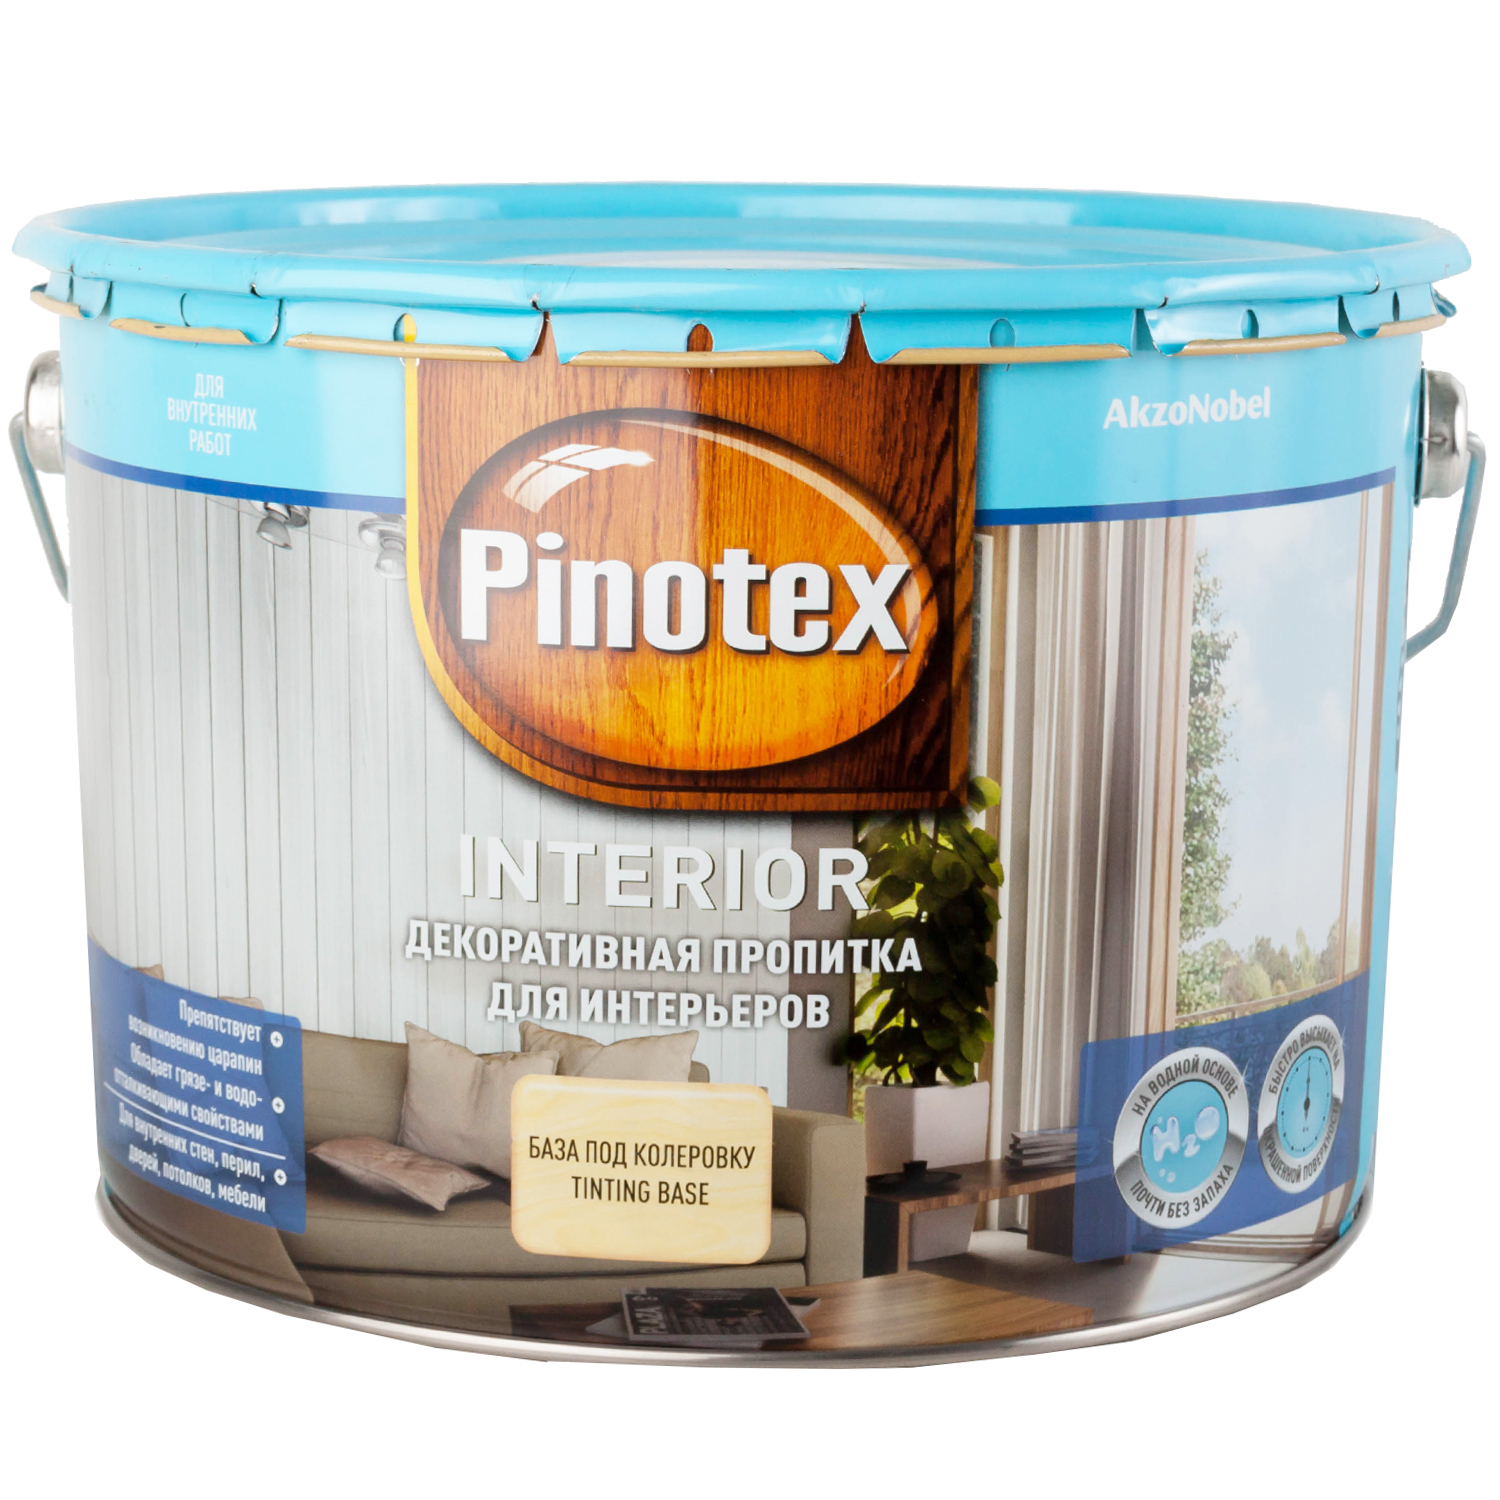 Pinotex INTERIOR